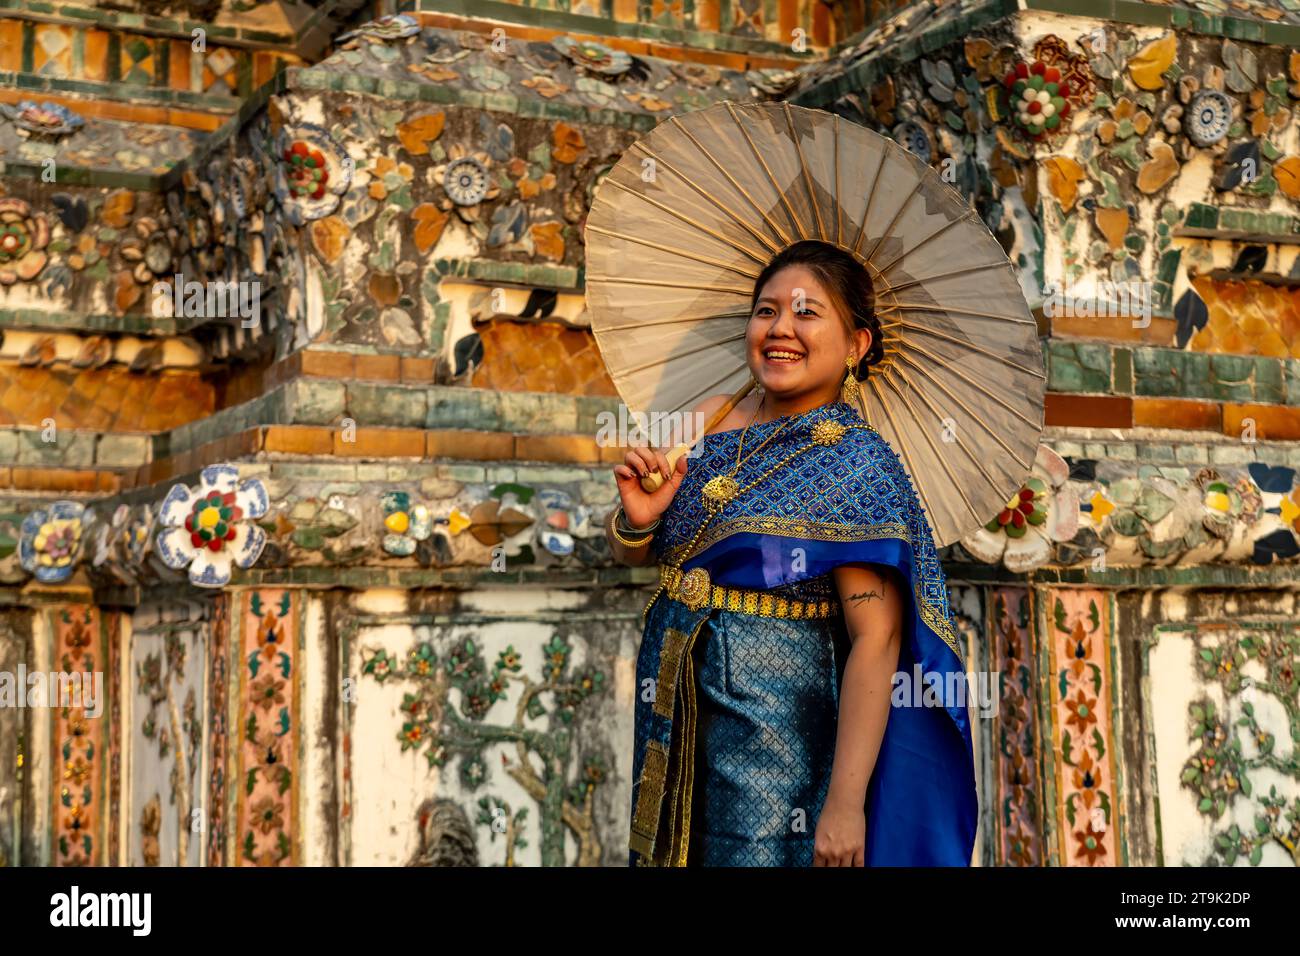 Festlich traditionell gekleidete Frau mit Schirm posiert vor dem Tempel Wat Arun oder Tempel der Morgenröte a Bangkok, Thailandia, Asien | Traditio Foto Stock